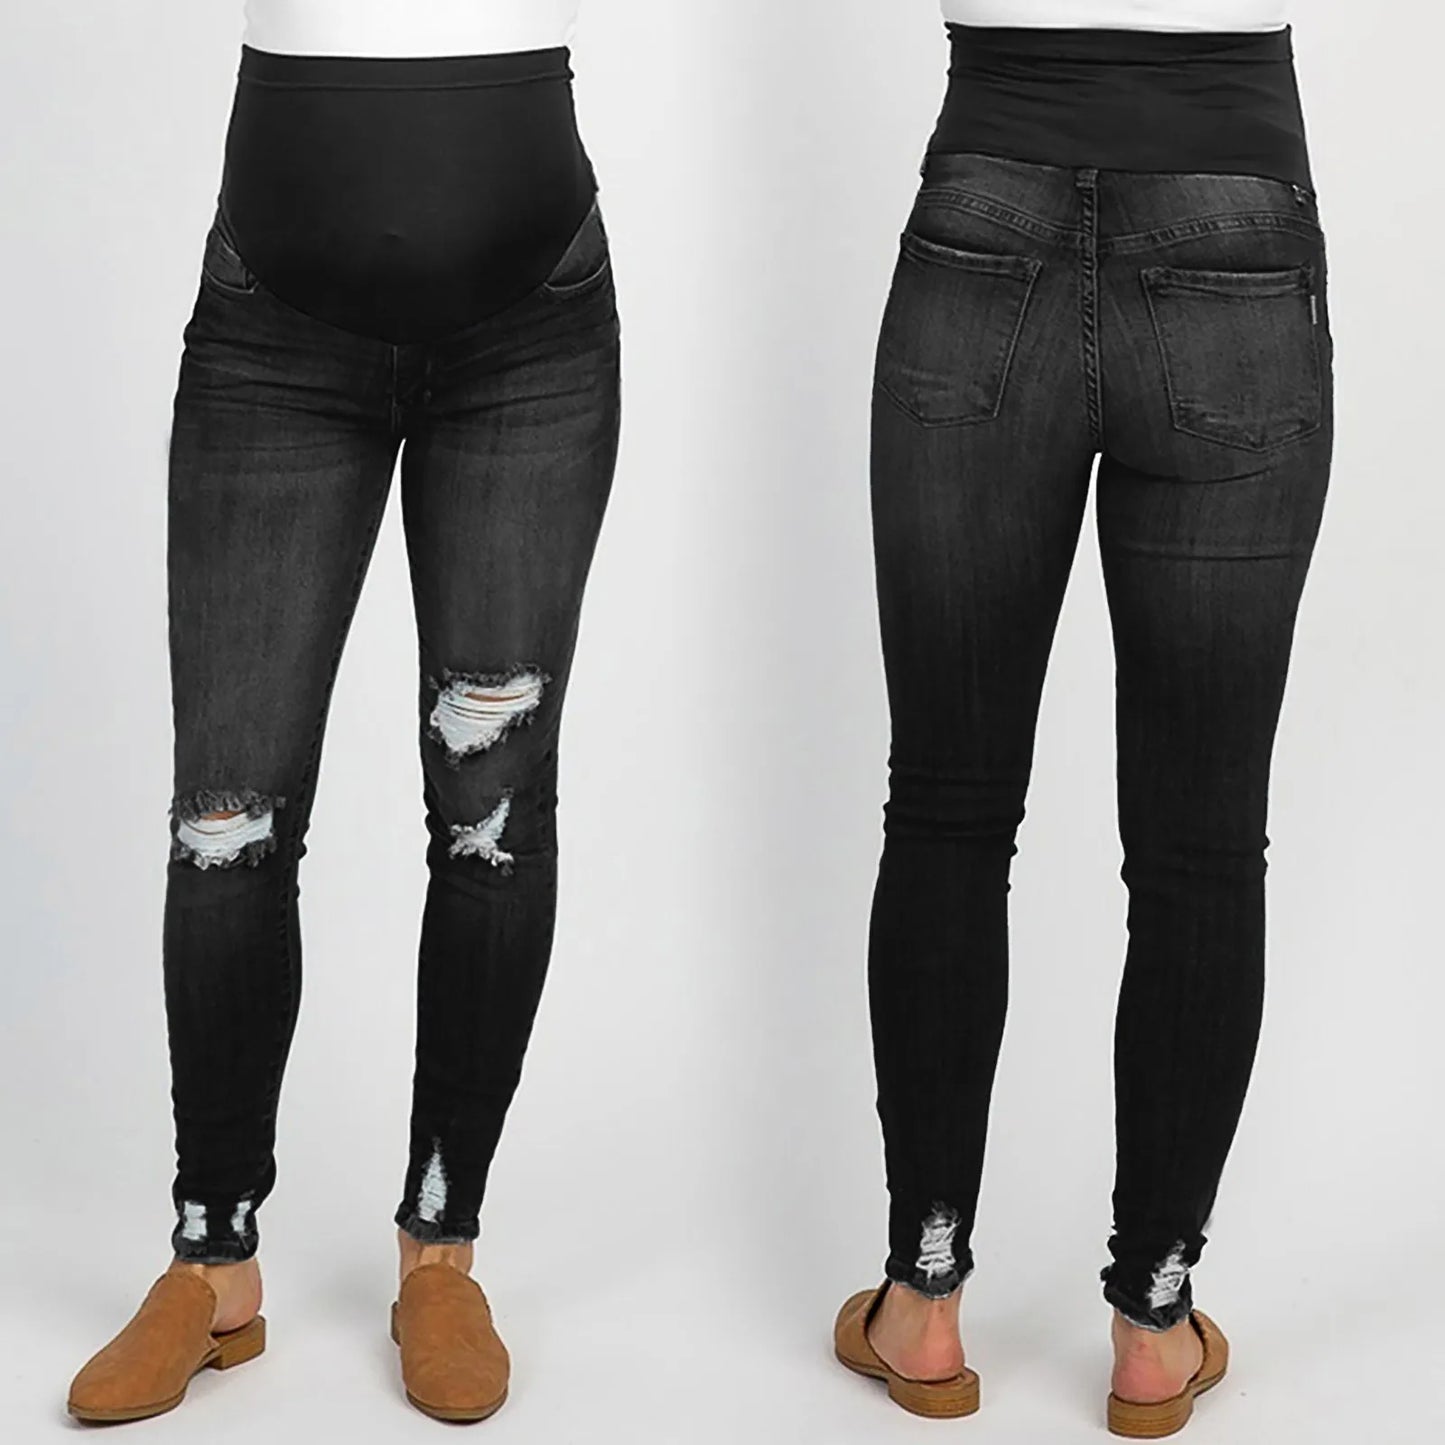 "Estilo Expandido: Jeans Cómodos y con Amplitud para Ajustarse a tu Panza en Crecimiento"